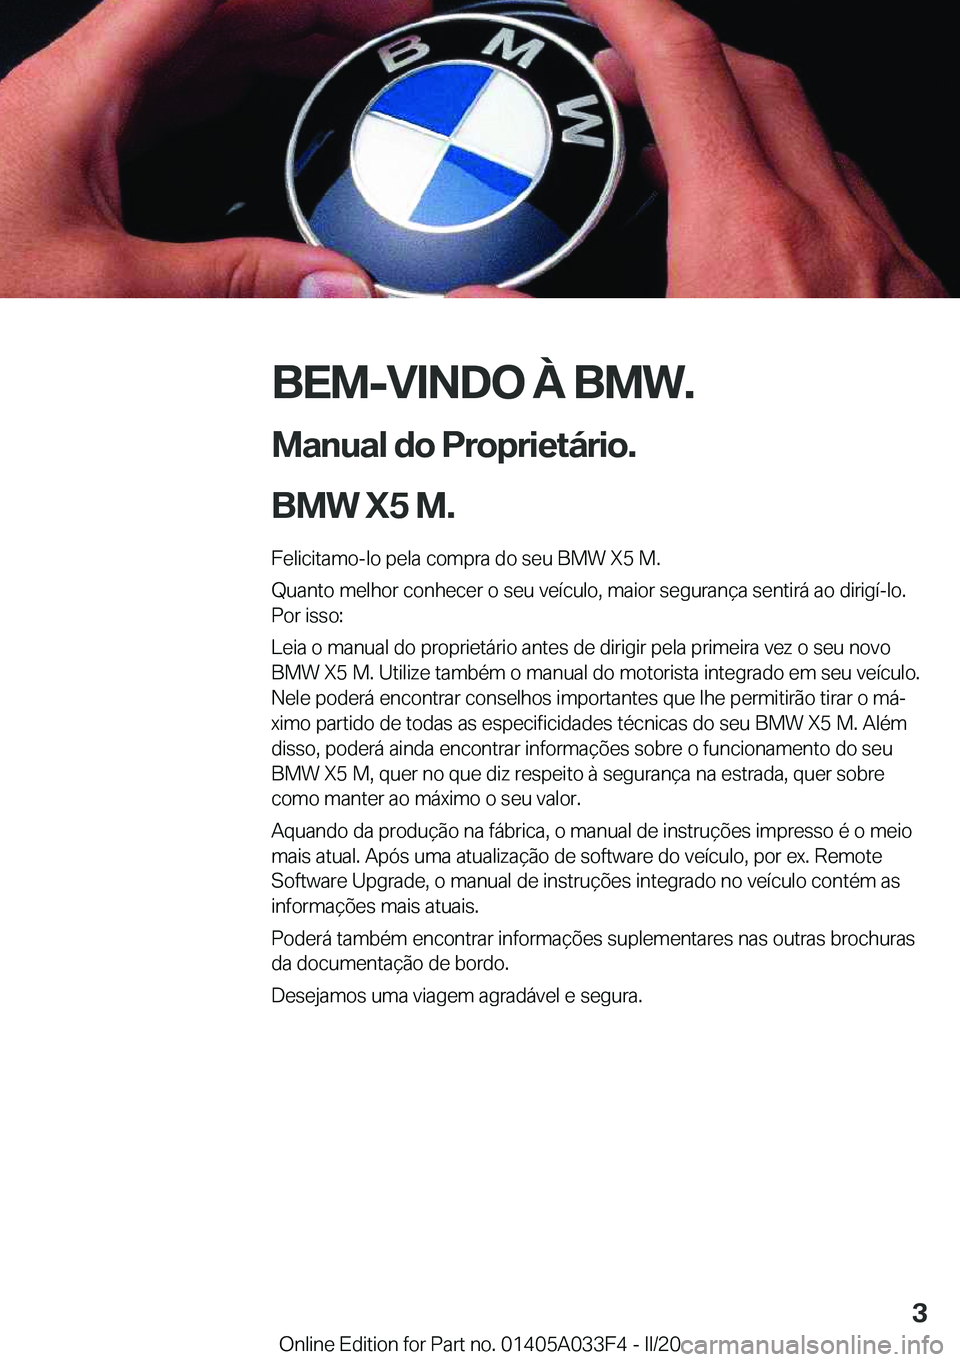 BMW X5 M 2020  Manual do condutor (in Portuguese) �B�E�M�-�V�I�N�D�O��À��B�M�W�.
�M�a�n�u�a�l��d�o��P�r�o�p�r�i�e�t�á�r�i�o�.
�B�M�W��X�5��M�. �F�e�l�i�c�i�t�a�m�o�-�l�o��p�e�l�a��c�o�m�p�r�a��d�o��s�e�u��B�M�W��X�5��M�.
�Q�u�a�n�t�o�